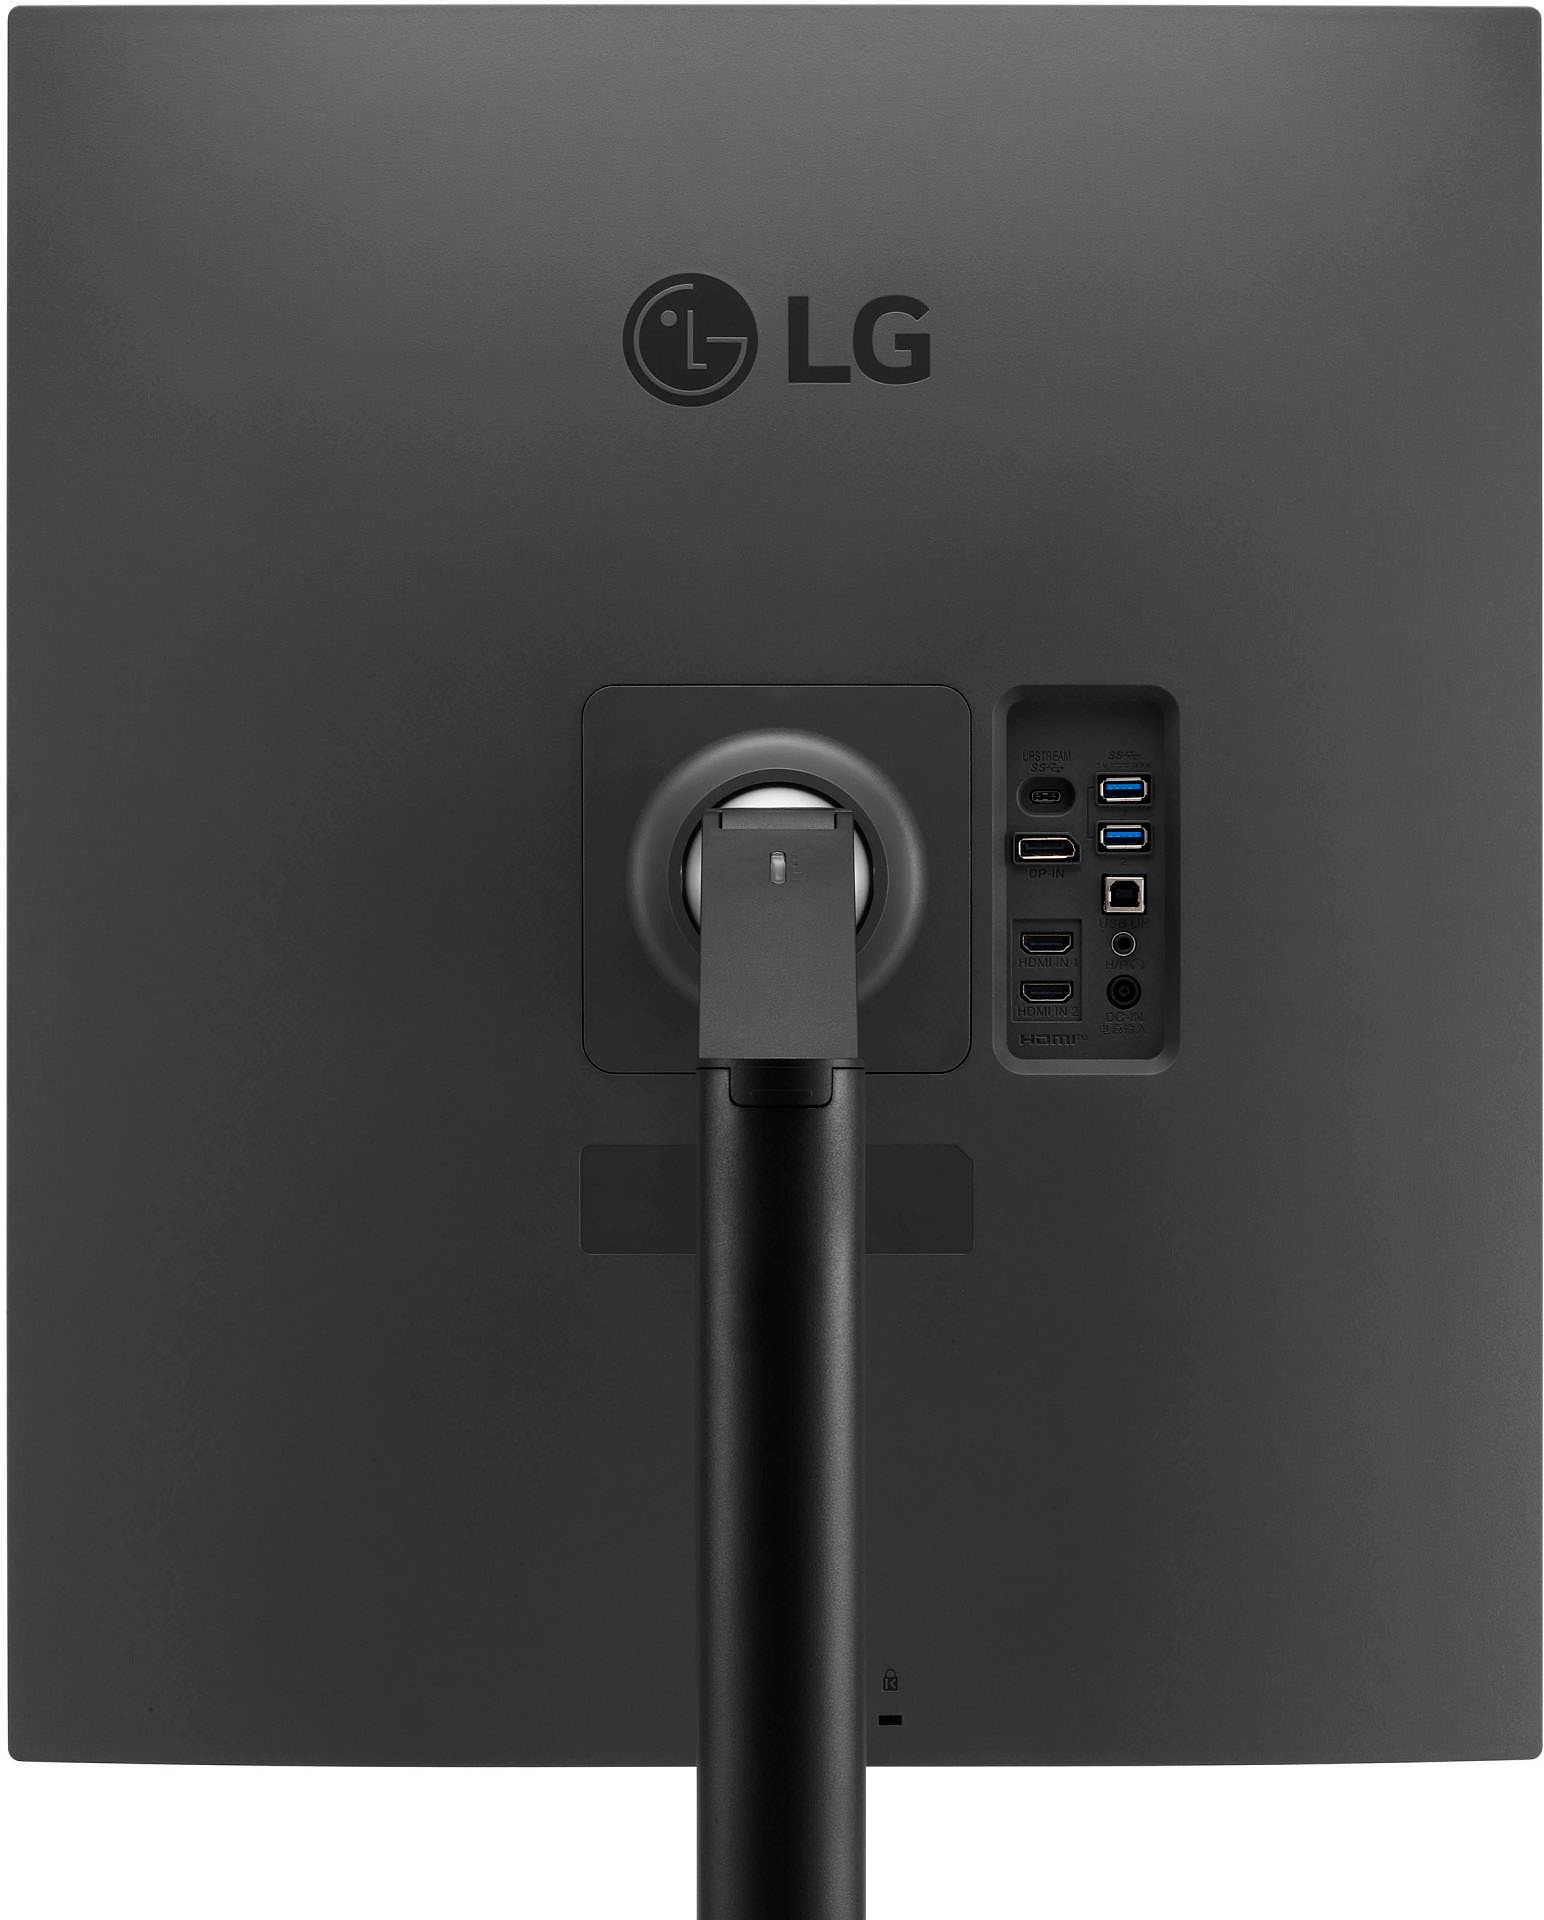 LG 28MT49S WIFI SmartTV TDT 28 '' Peana Ethernet 2 HDMI 1 USB